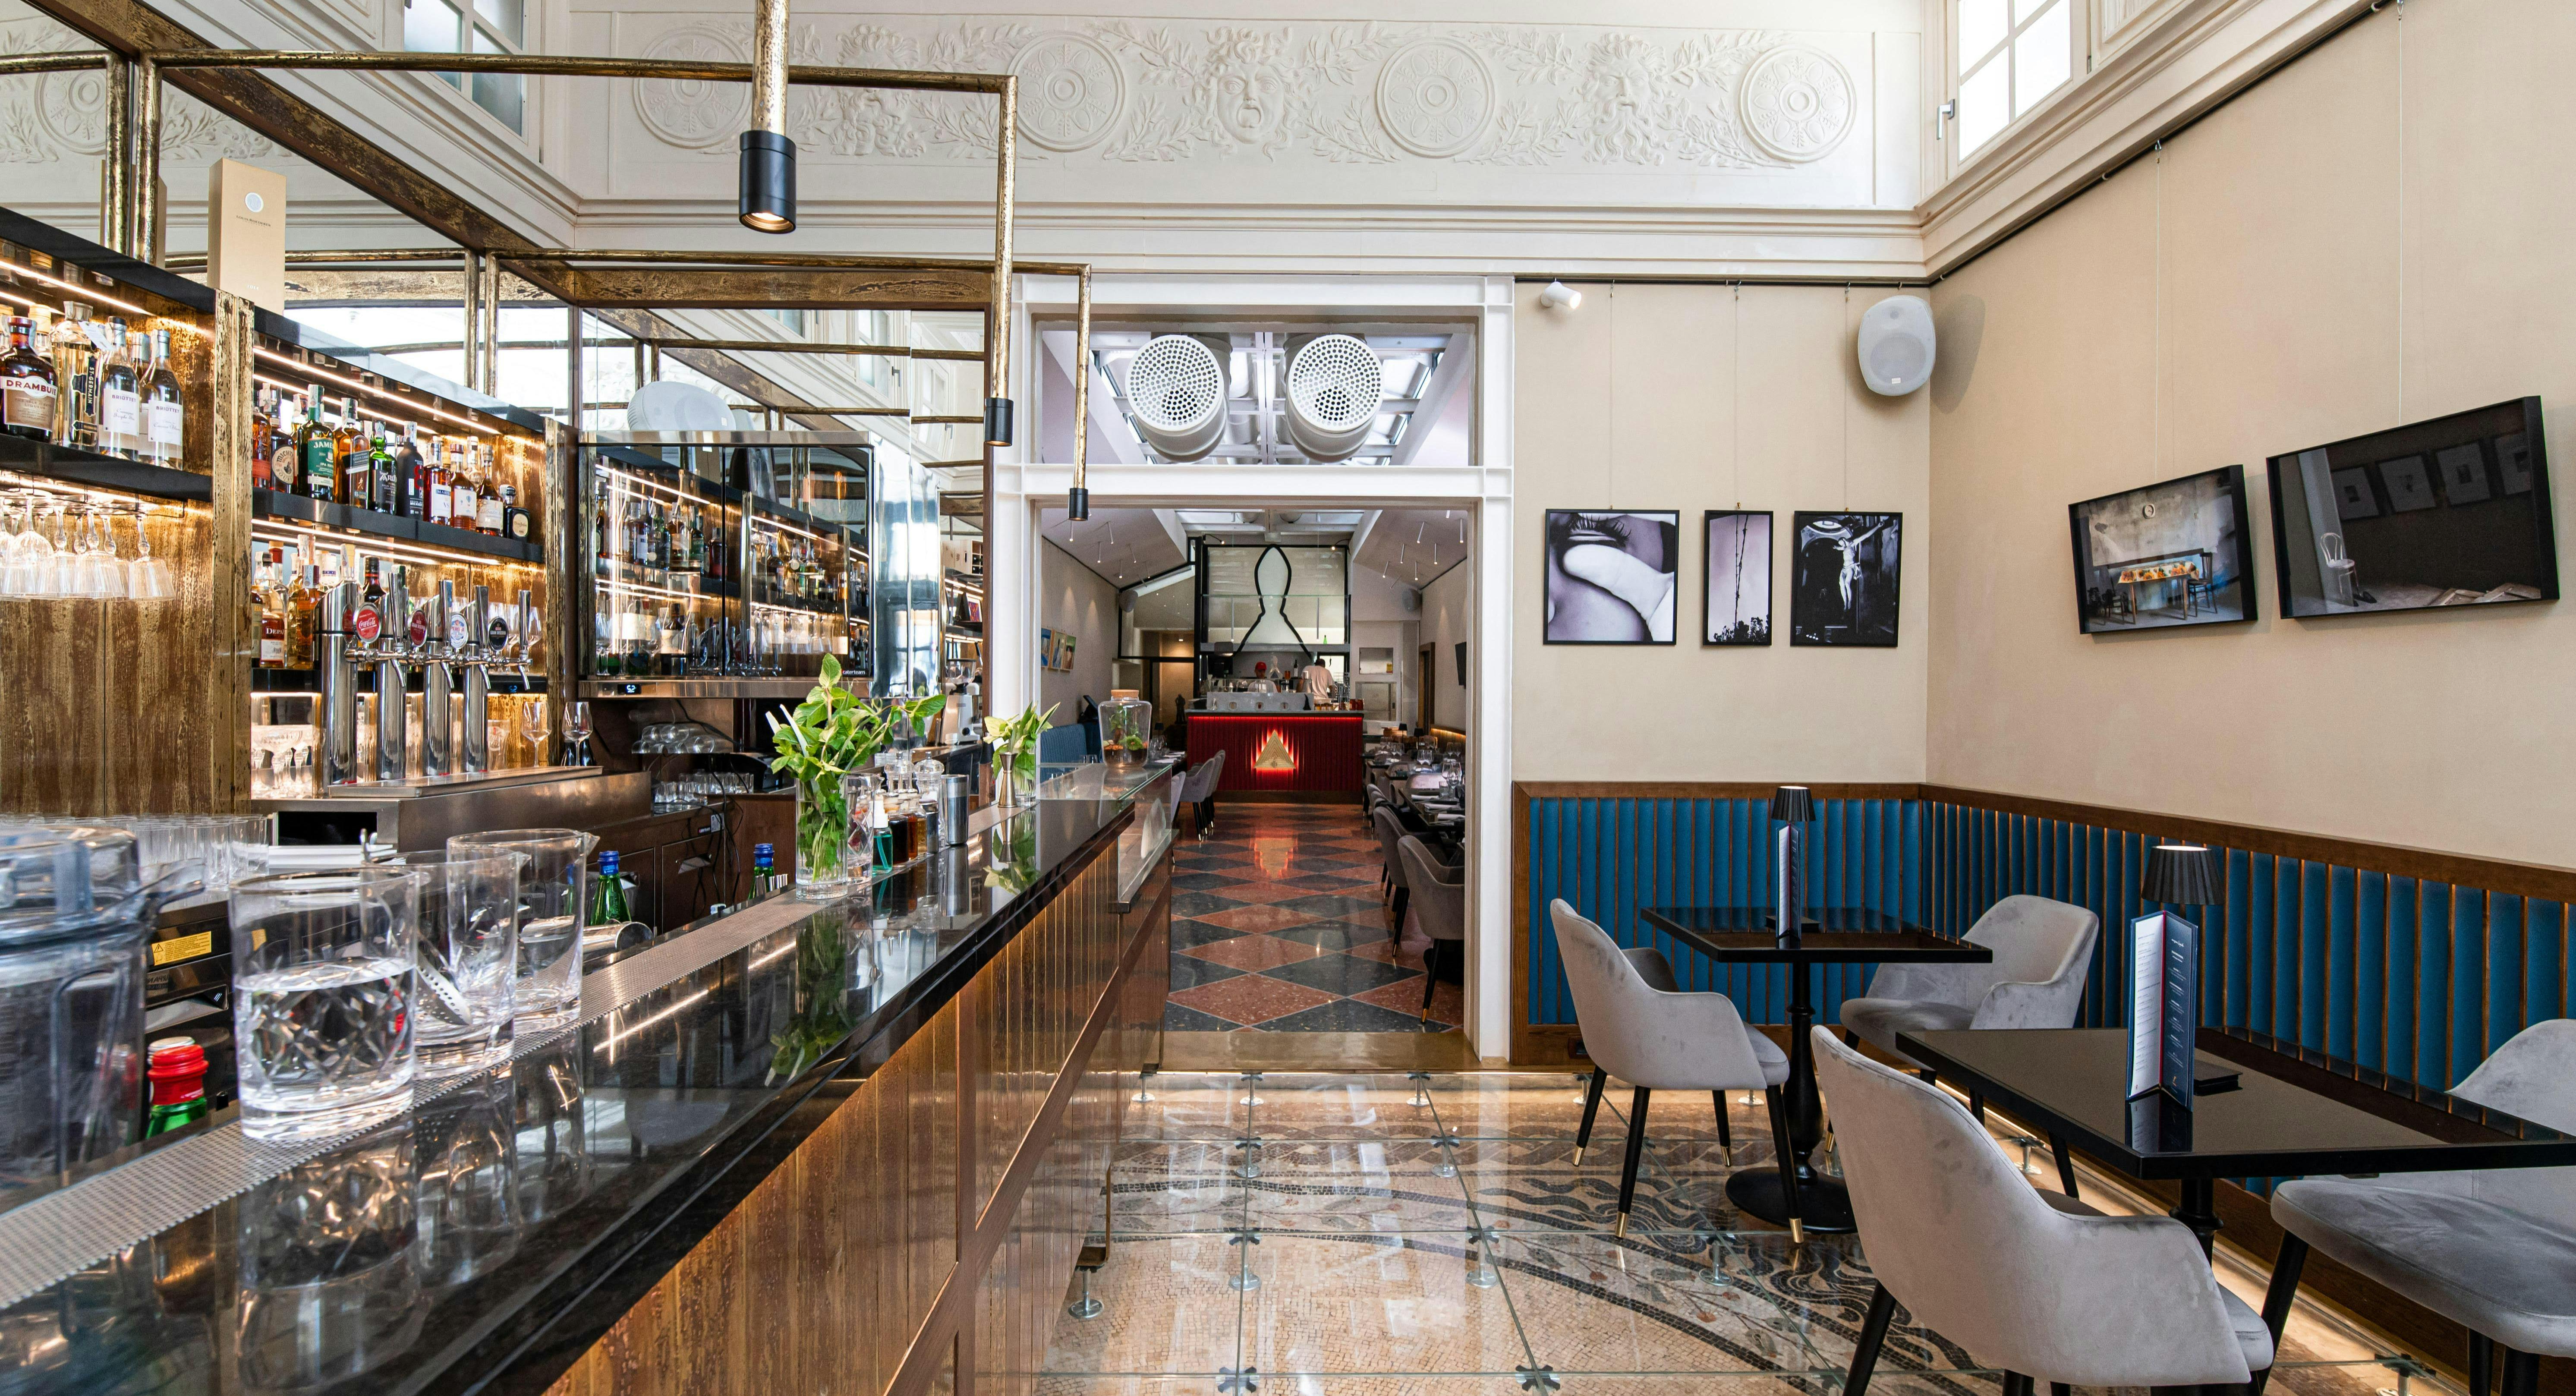 Photo of restaurant Galleria Navarra Rossopomodoro in Chiaia, Naples